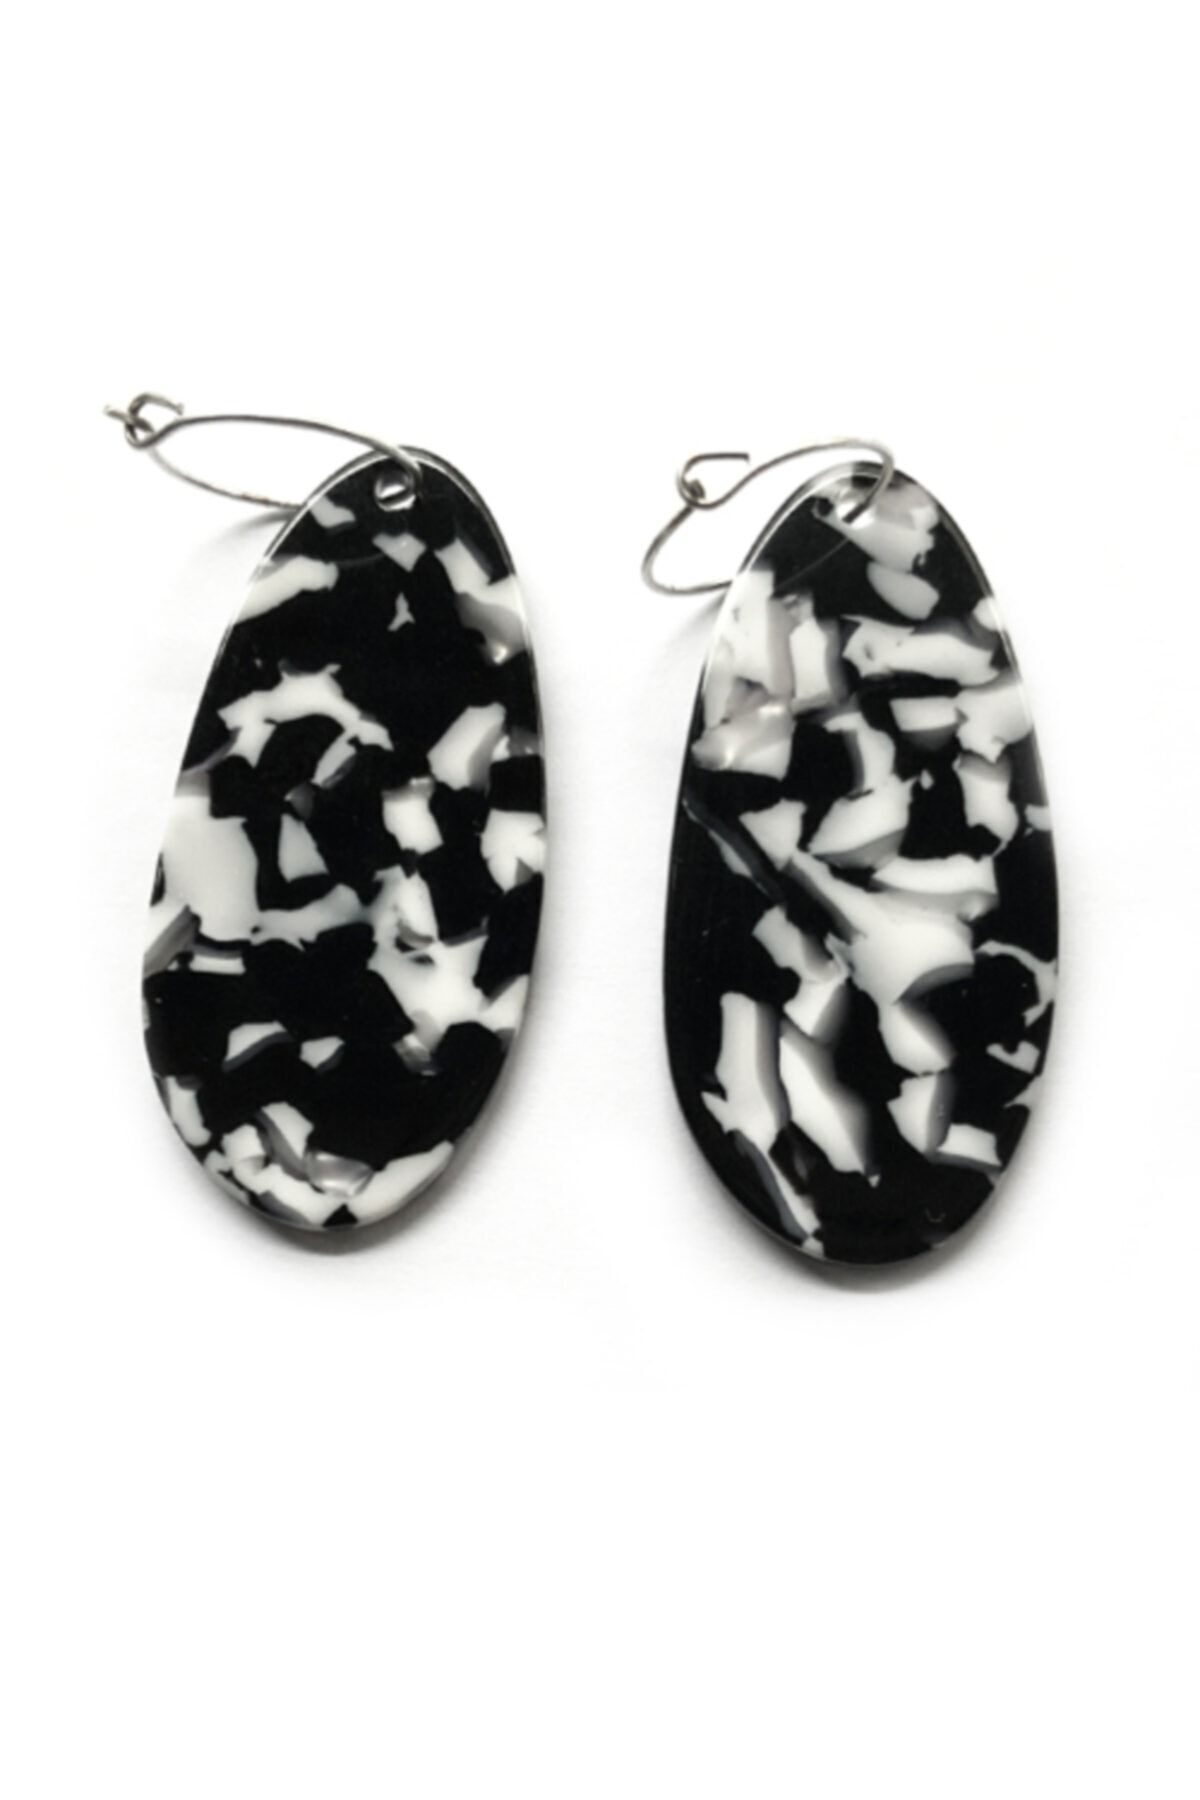 Designer & Store Siyah Beyaz Oval Doğal Taş Mineral Görünümlü Tasarım Küpe